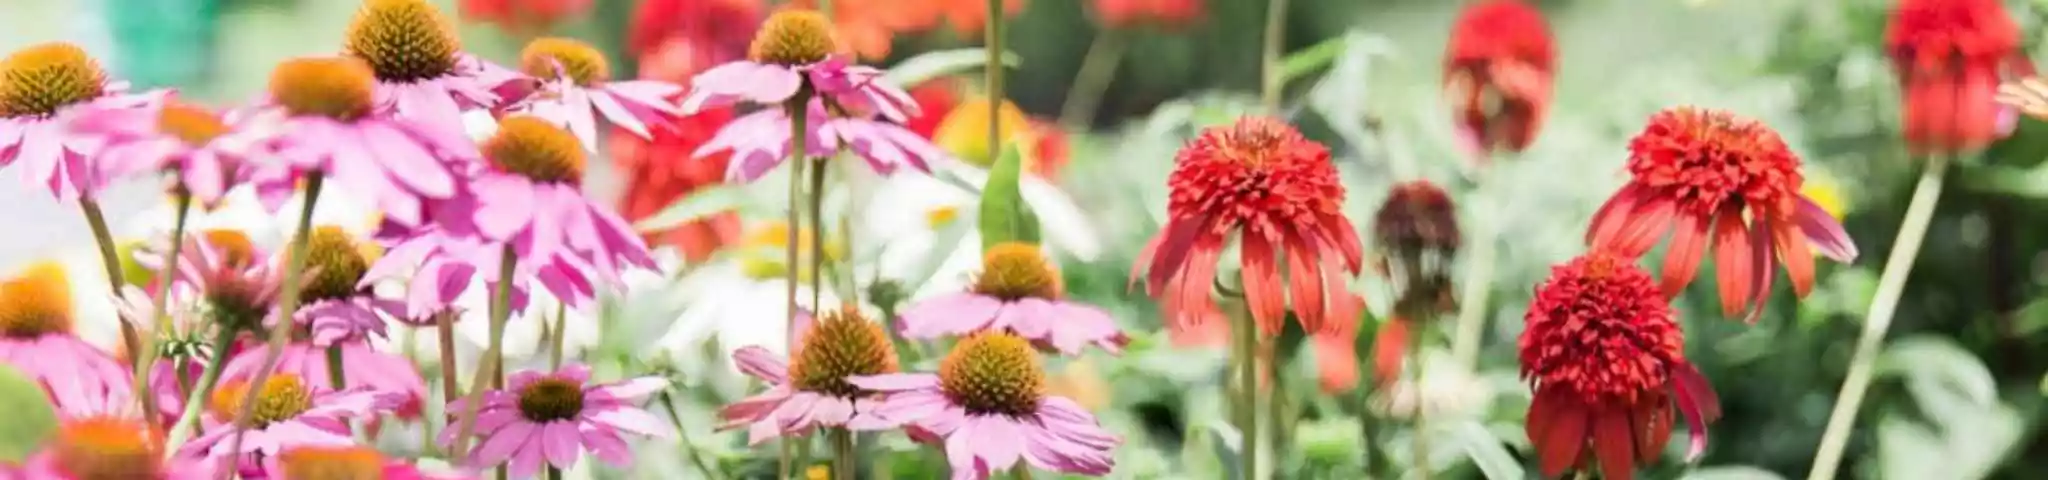 Coneflower Flowers